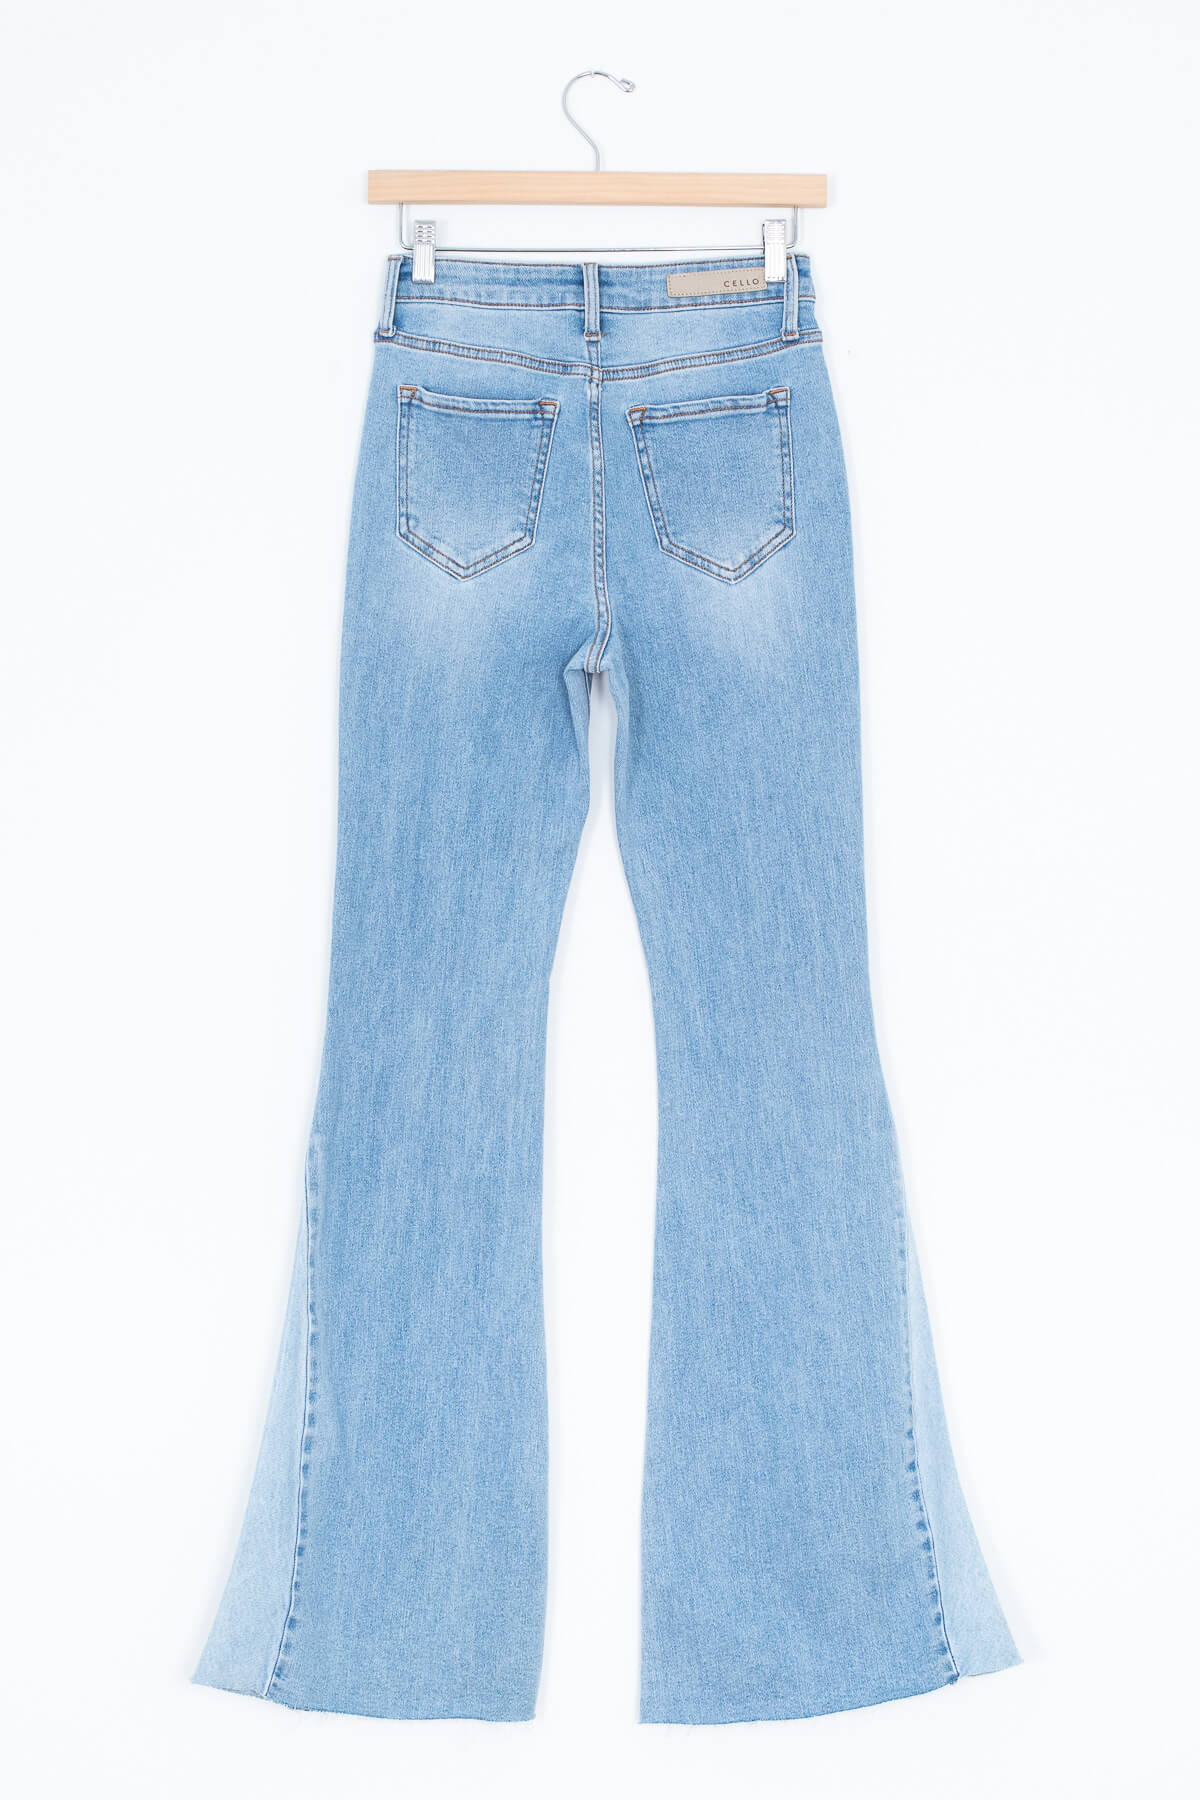 Women's hippie bellbottom jeans | Kariella